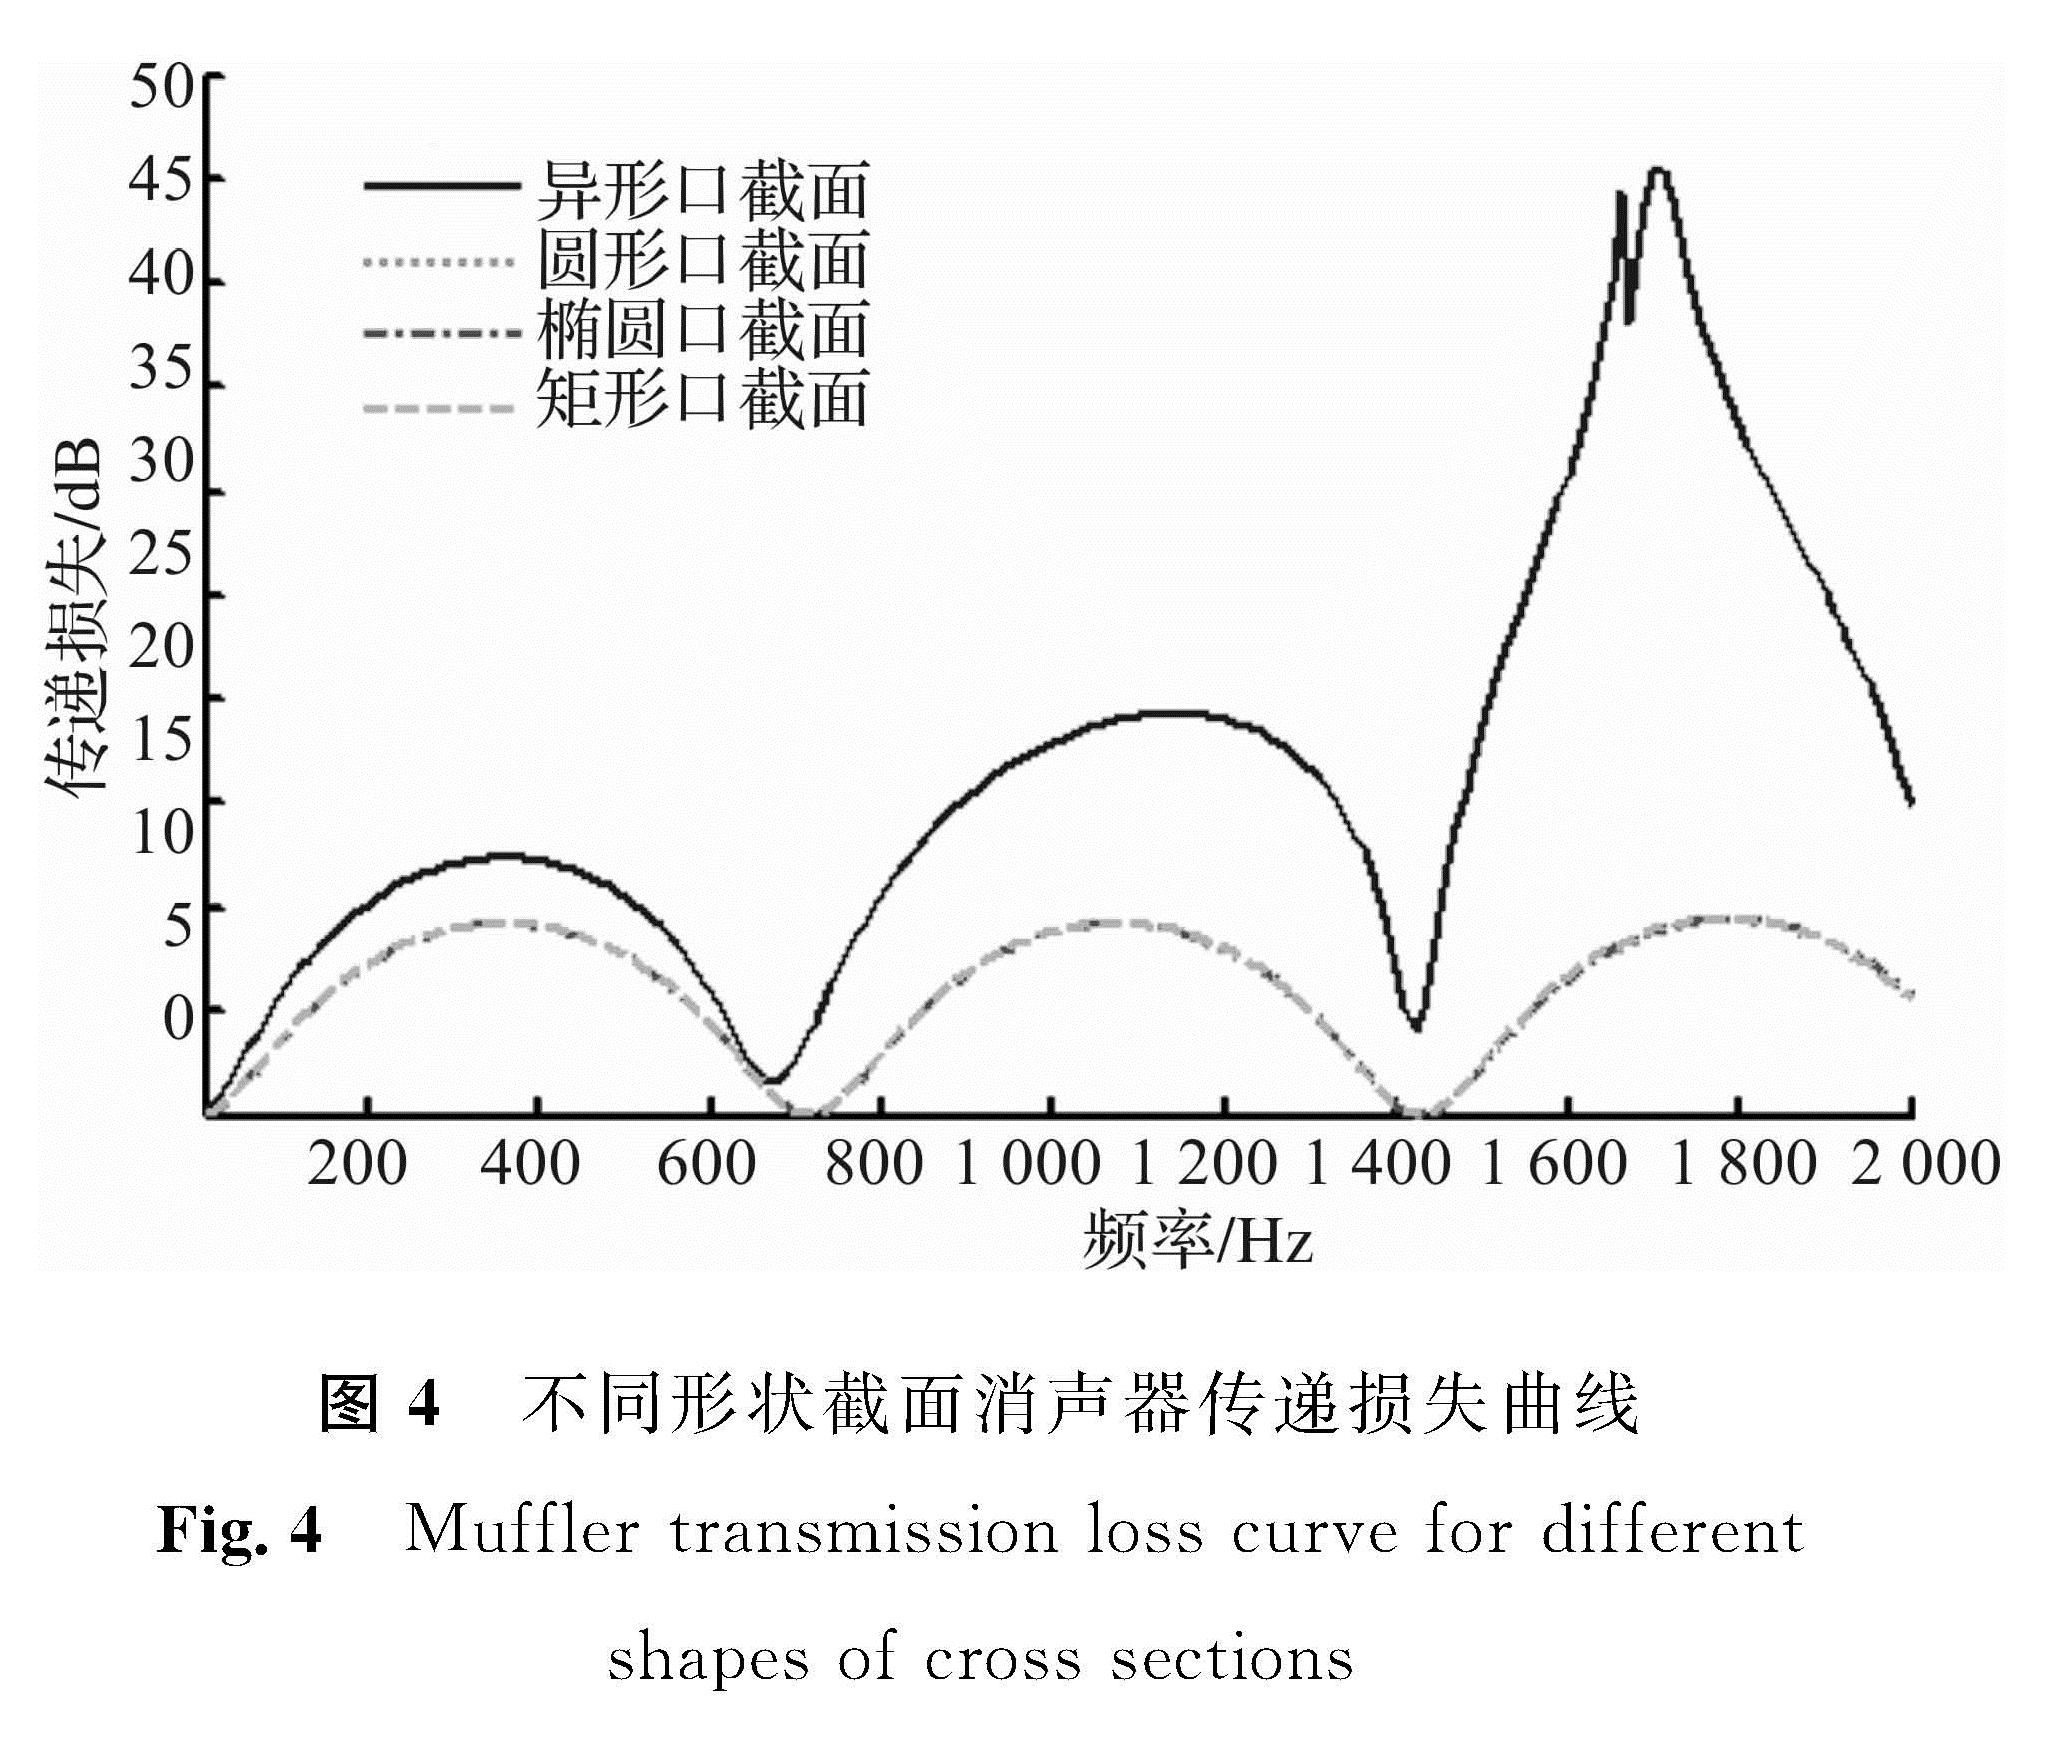 图4 不同形状截面消声器传递损失曲线<br/>Fig.4 Muffler transmission loss curve for different shapes of cross sections